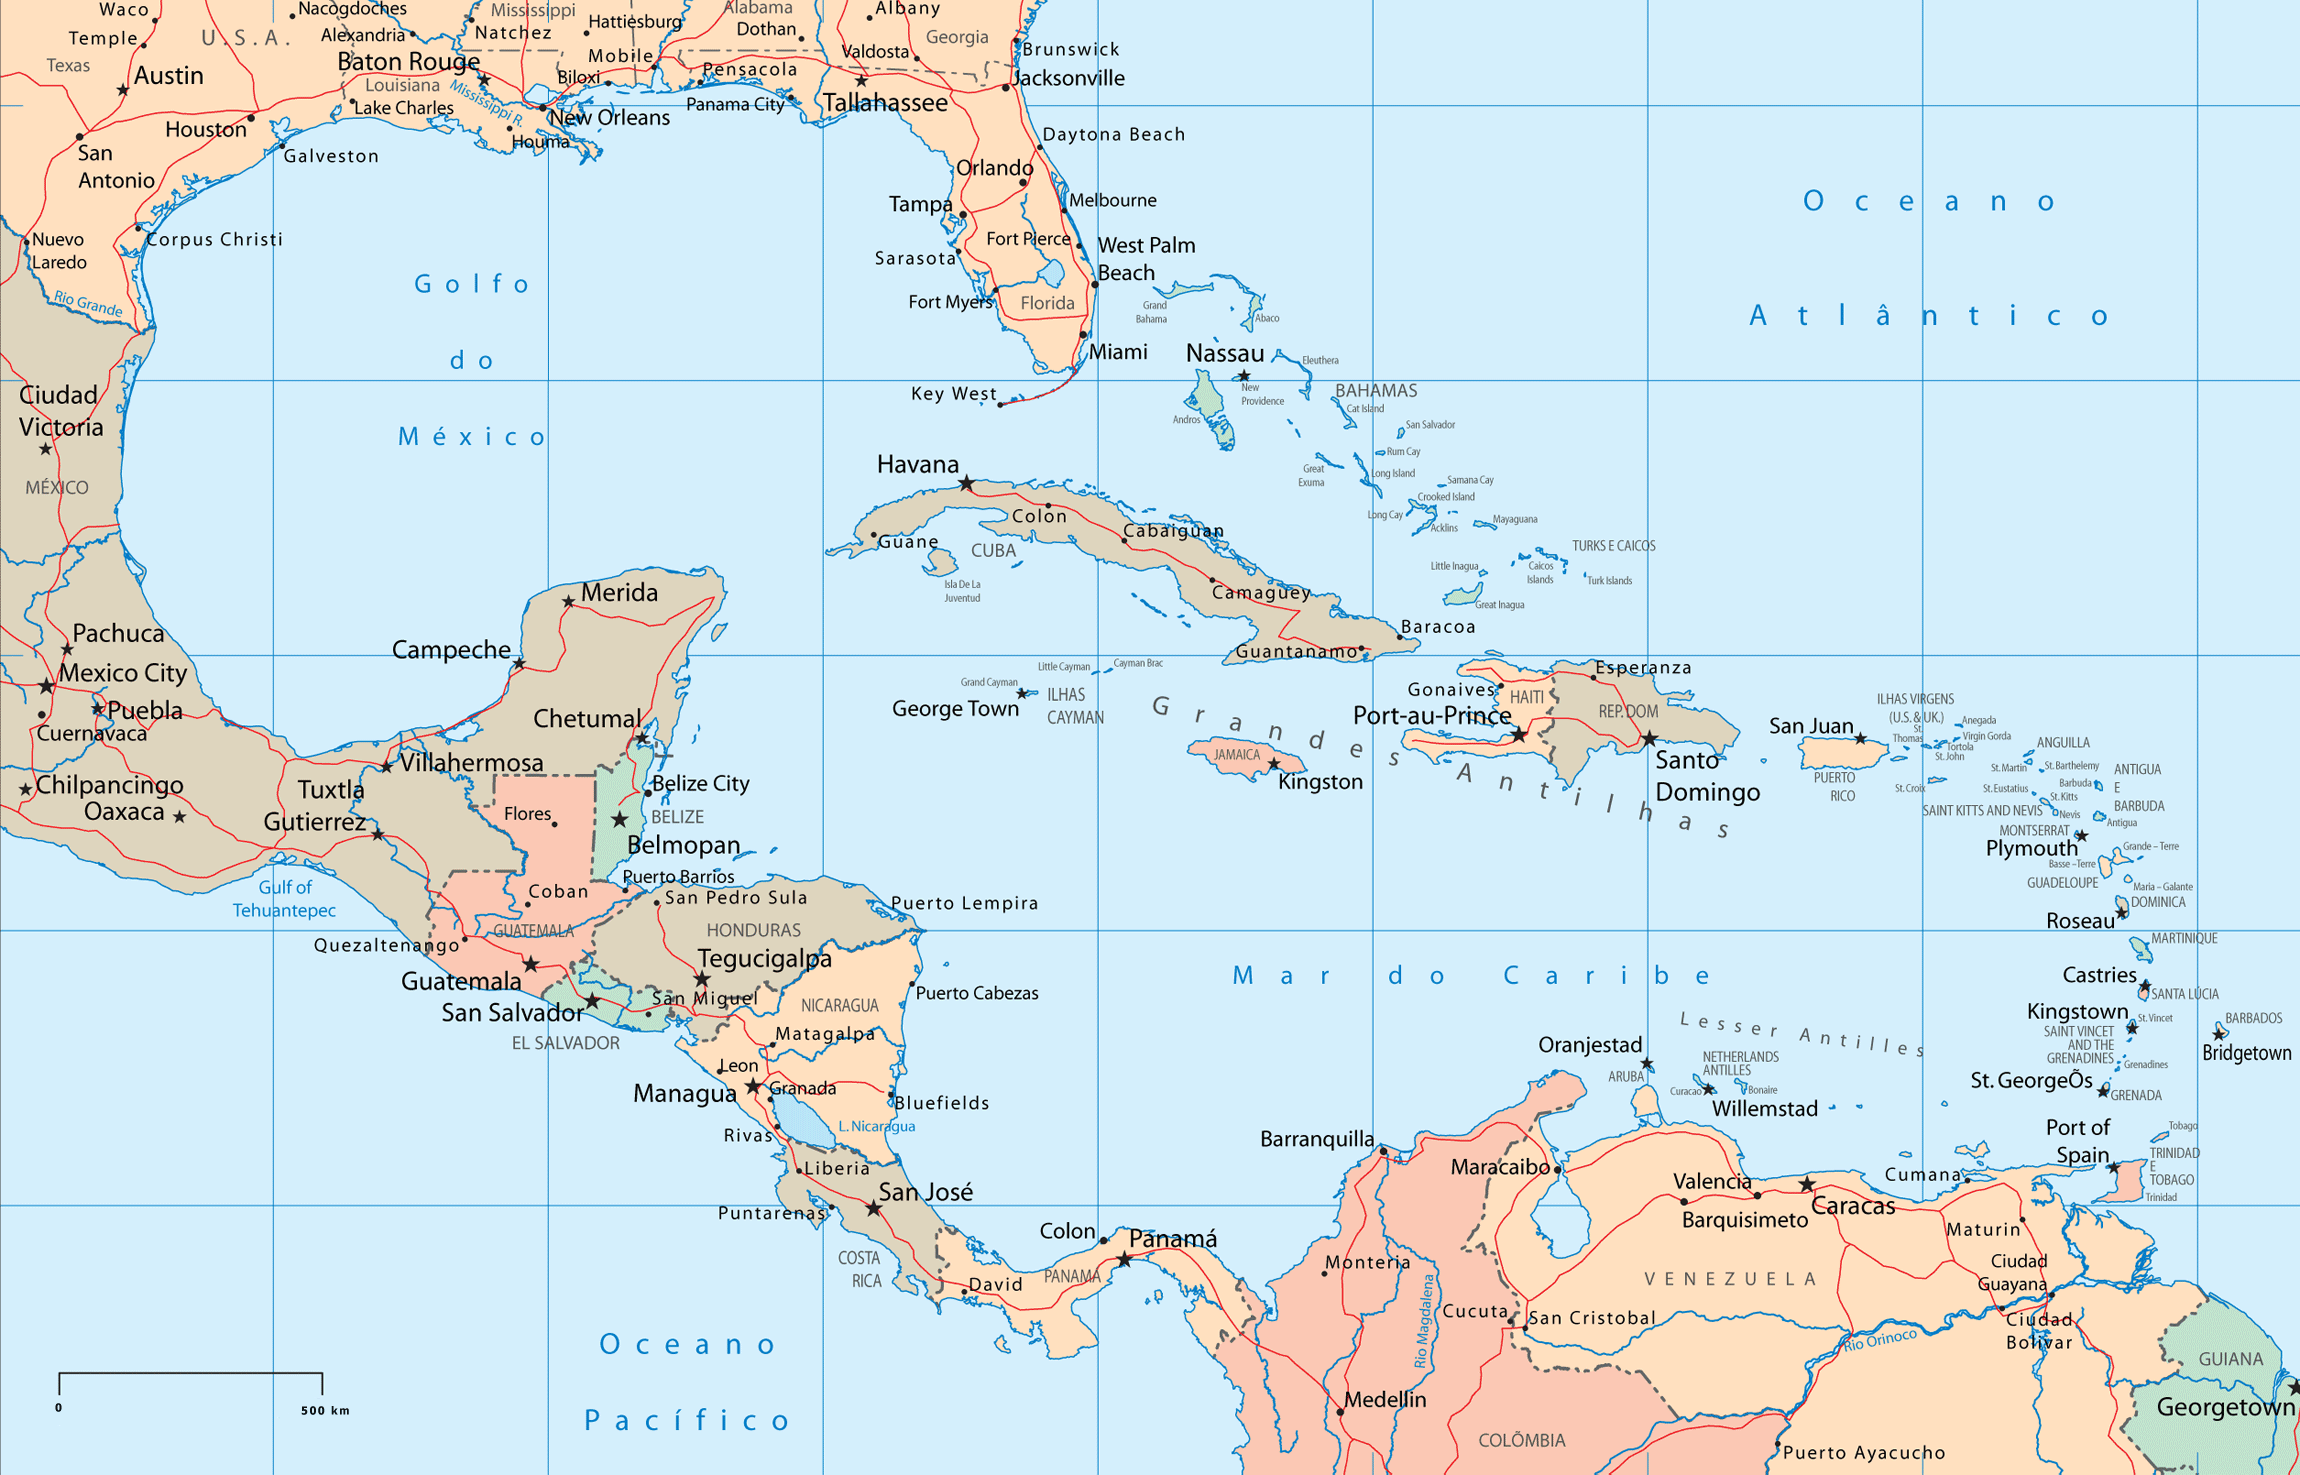 Mapa Político de América Central y del Caribe